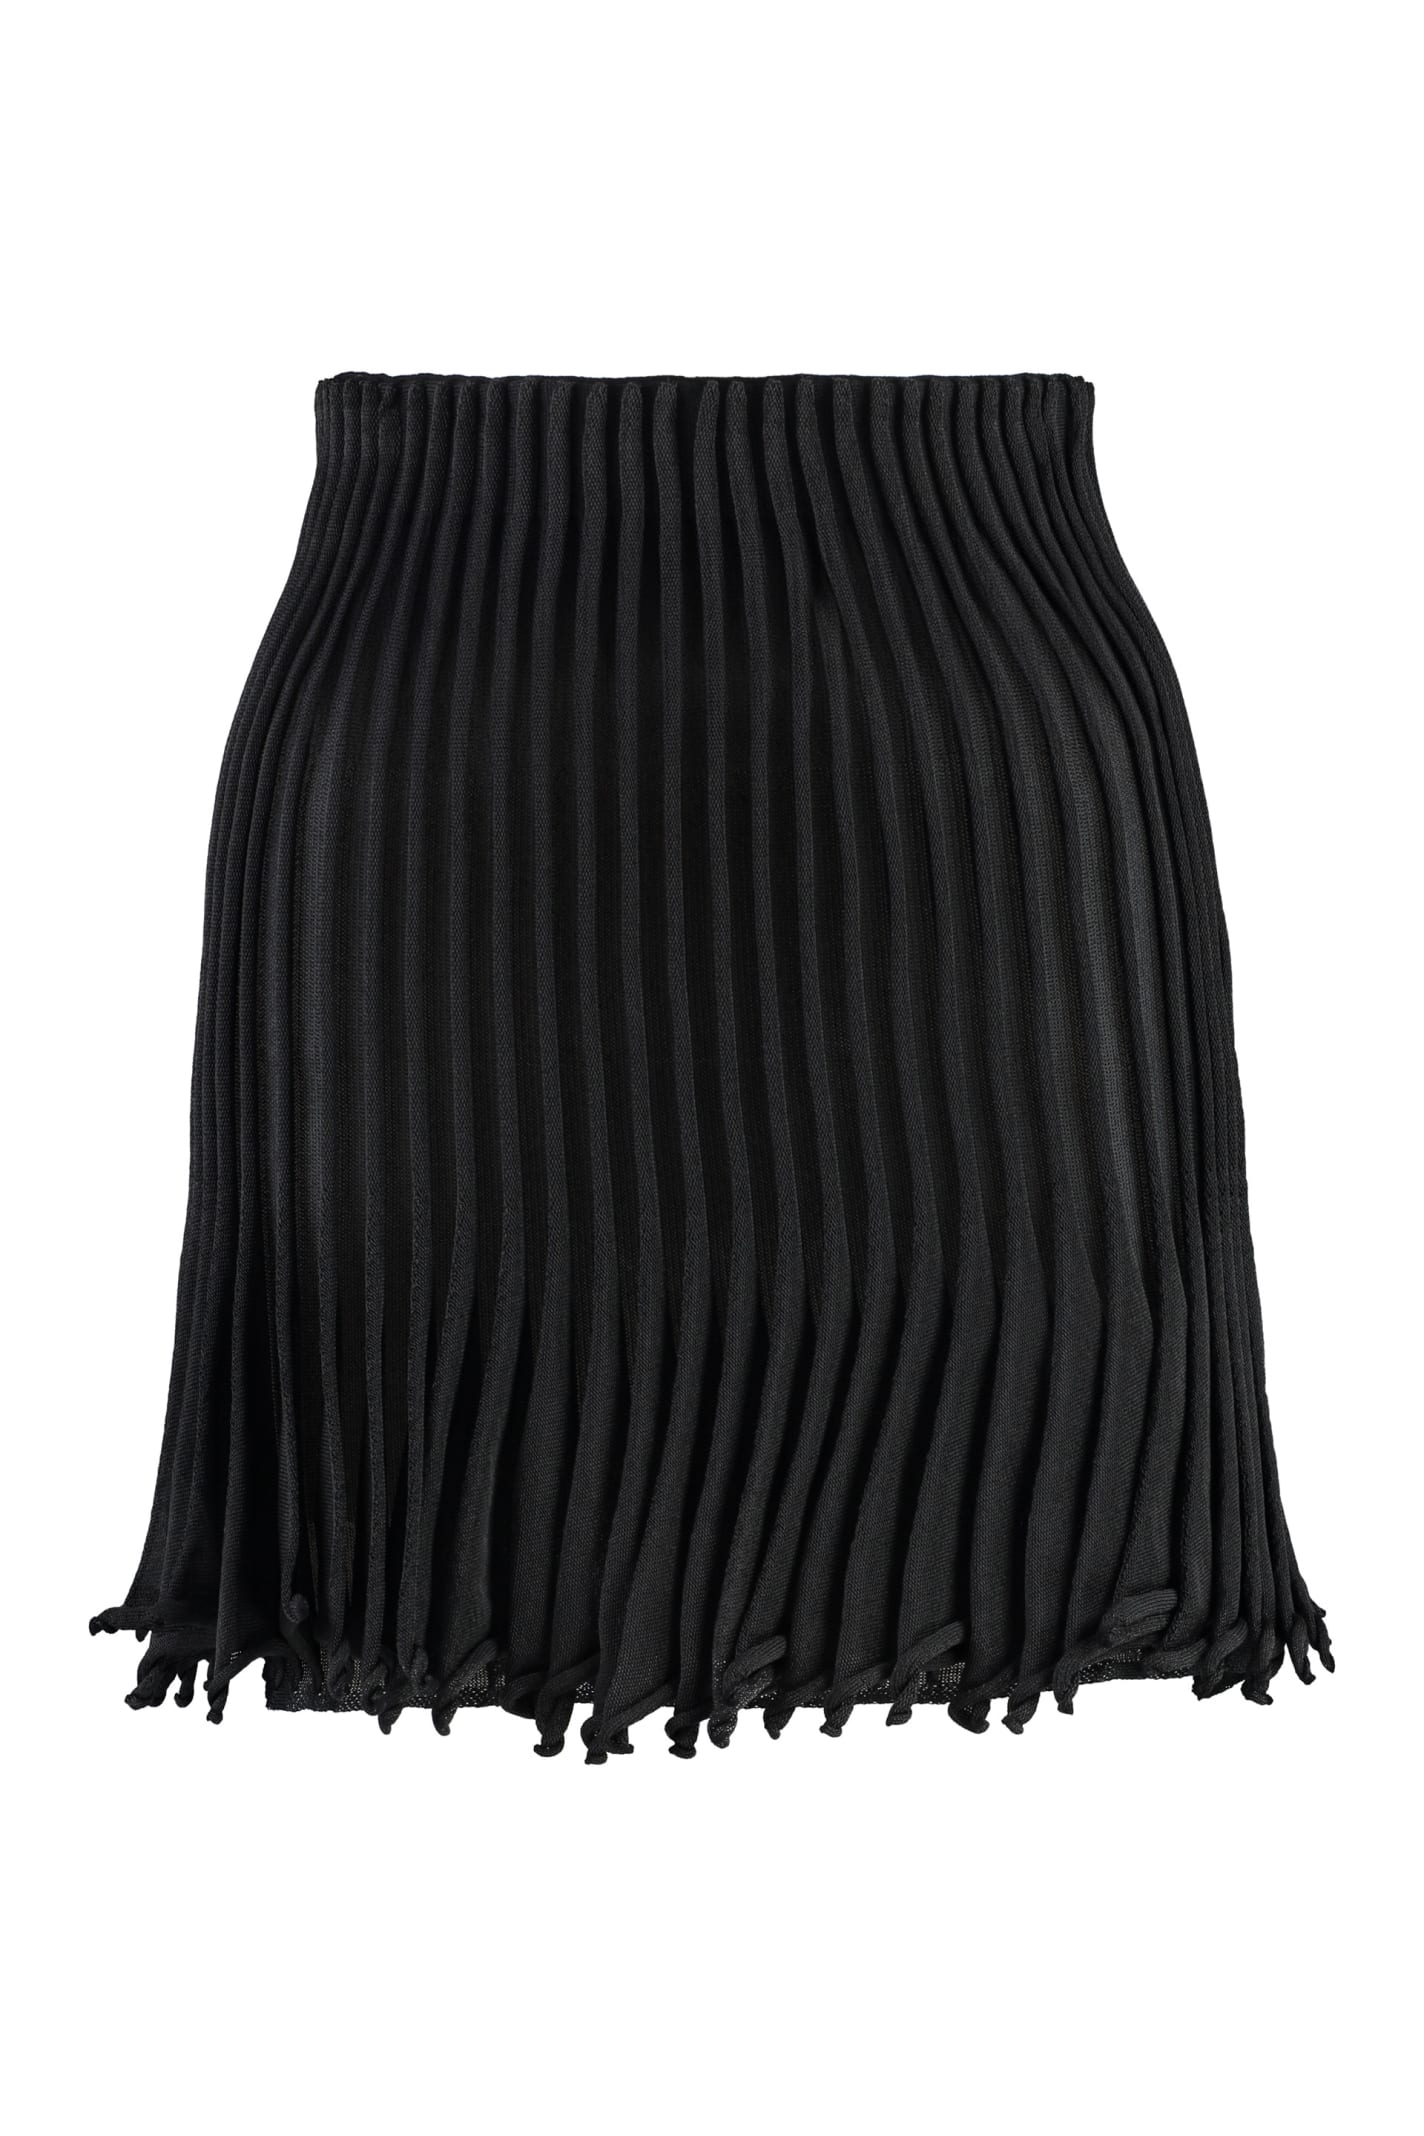 Black Pleated Short Skirt